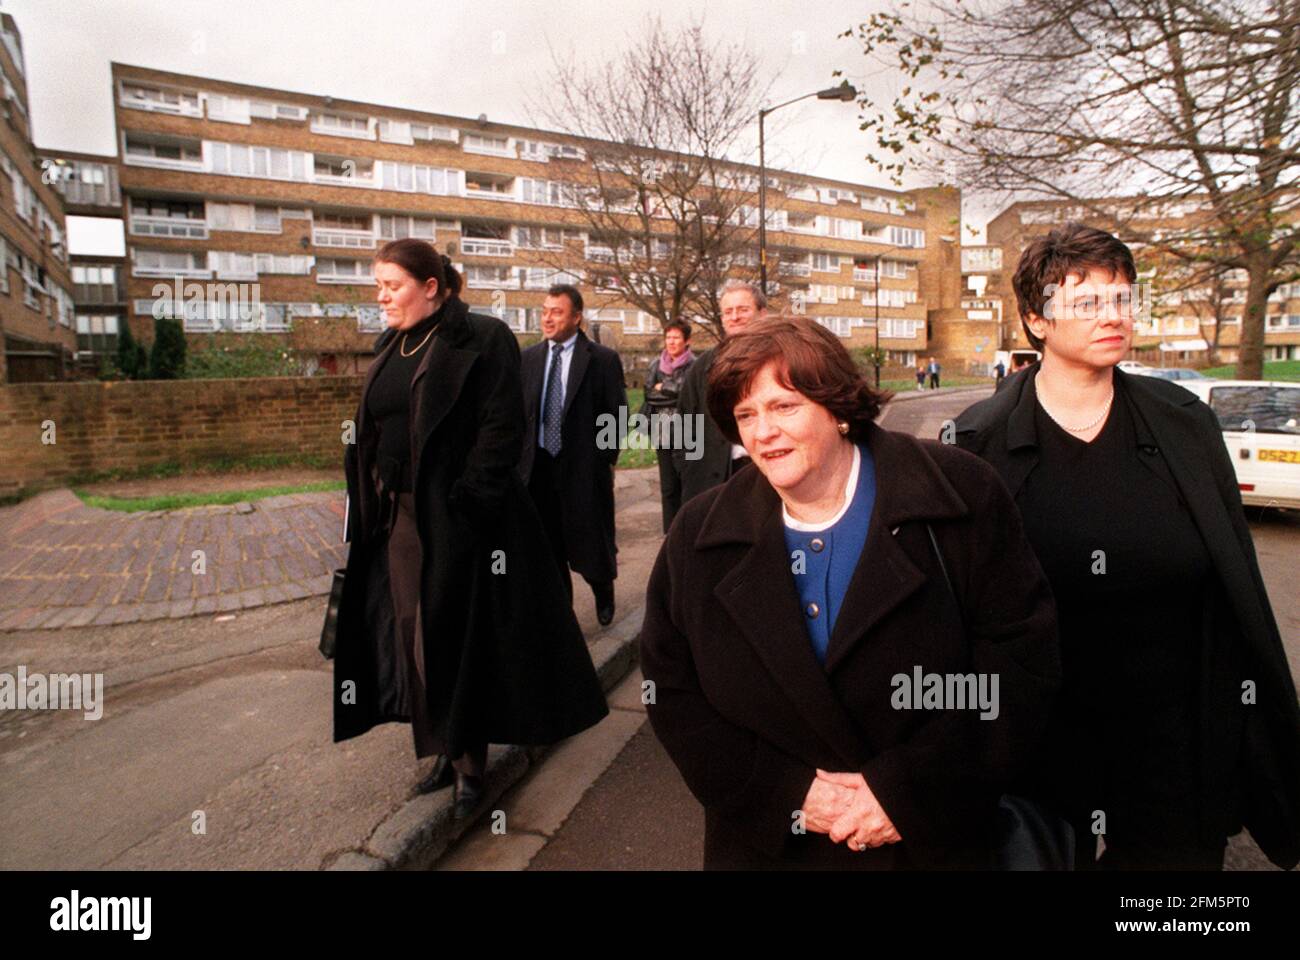 Dezember 2000 Anne Widdecombe besucht die Gegend. Im Hintergrund befindet sich der Wohnblock, in dem die ermordete 10-jährige Damilola Taylor lebte Stockfoto